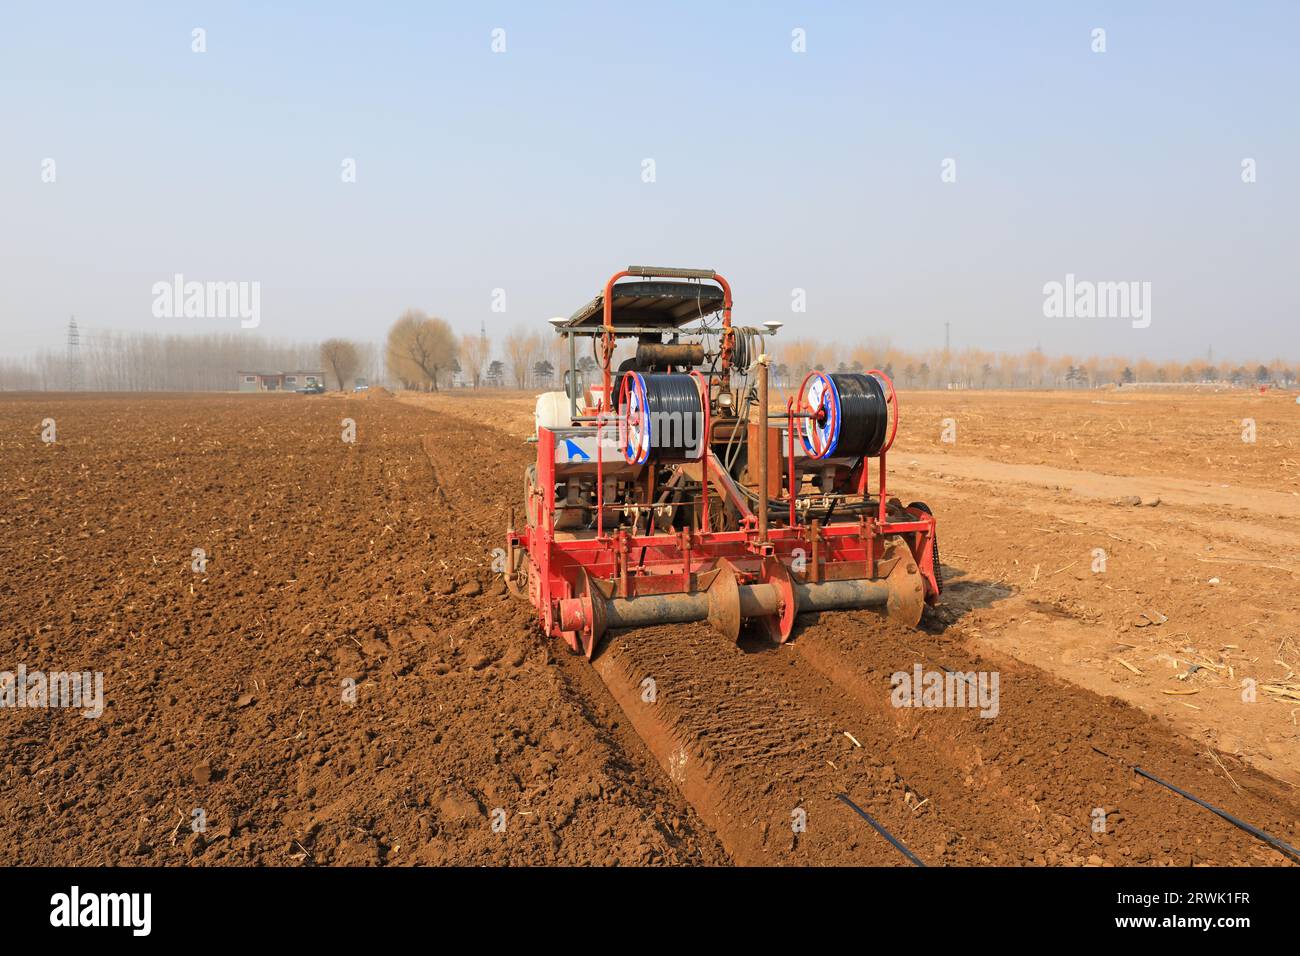 LUANNAN COUNTY, Cina - 9 marzo 2022: Gli agricoltori guidano macchinari agricoli per riordinare la terra e prepararsi a piantare cavolo cinese sul campo, NOR Foto Stock